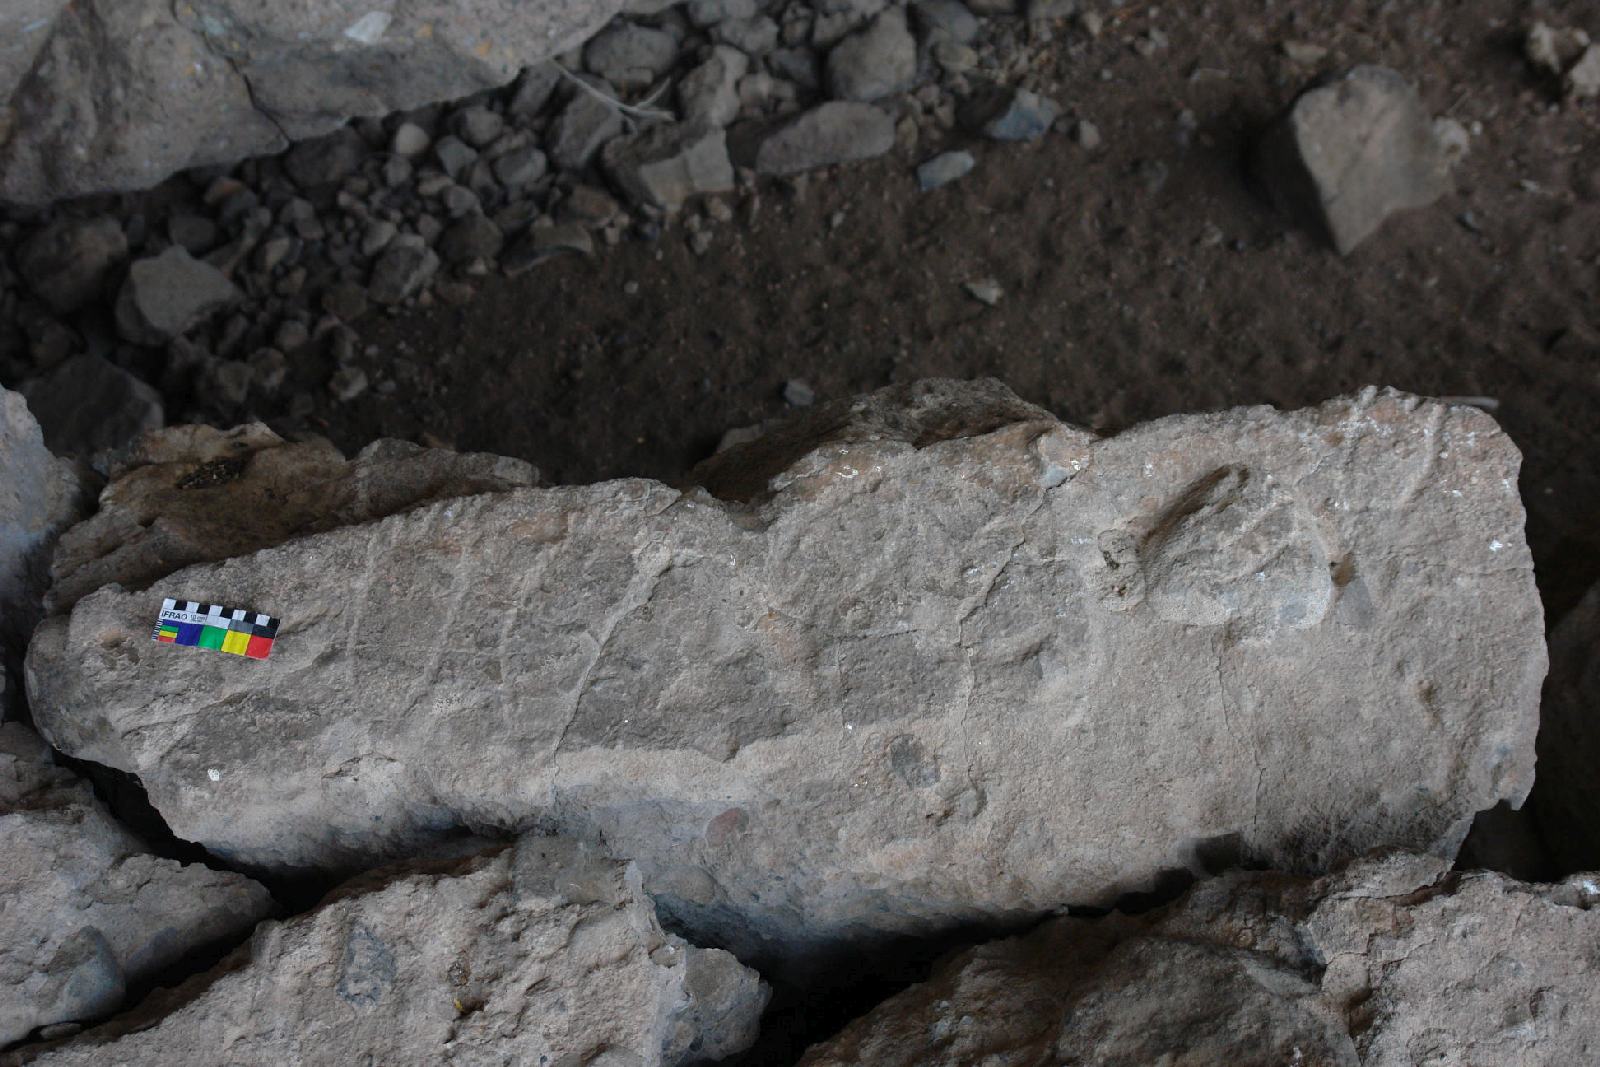 Foot petroglyphs on rock below.